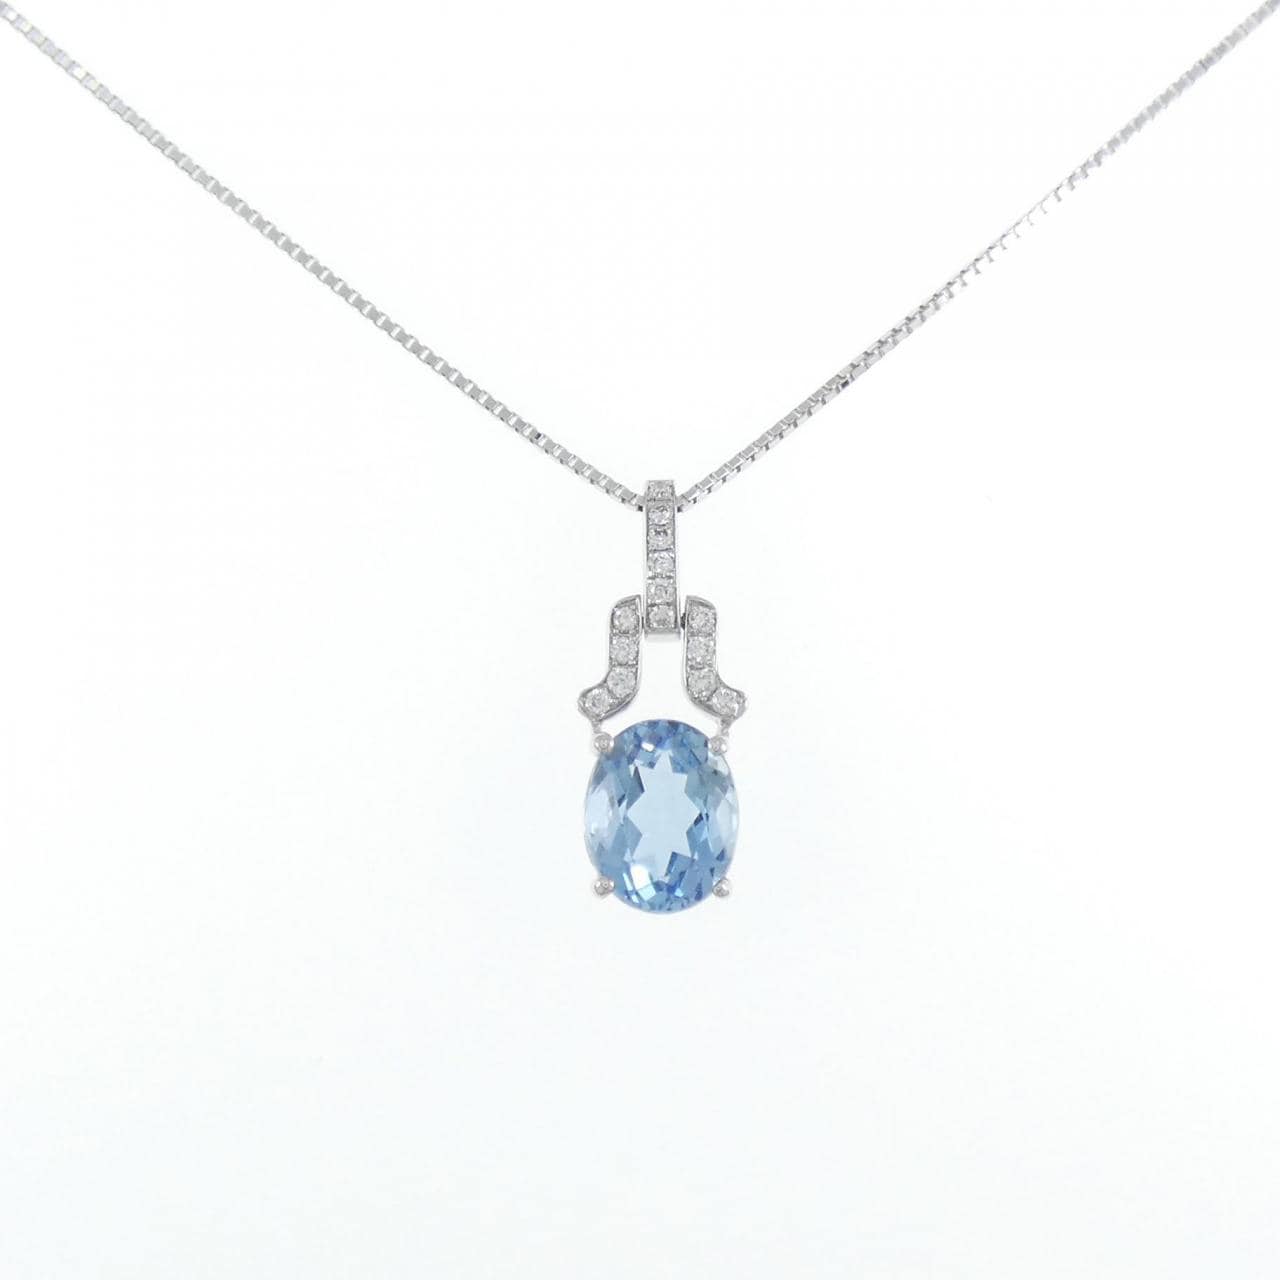 K18WG Aquamarine necklace 1.98CT